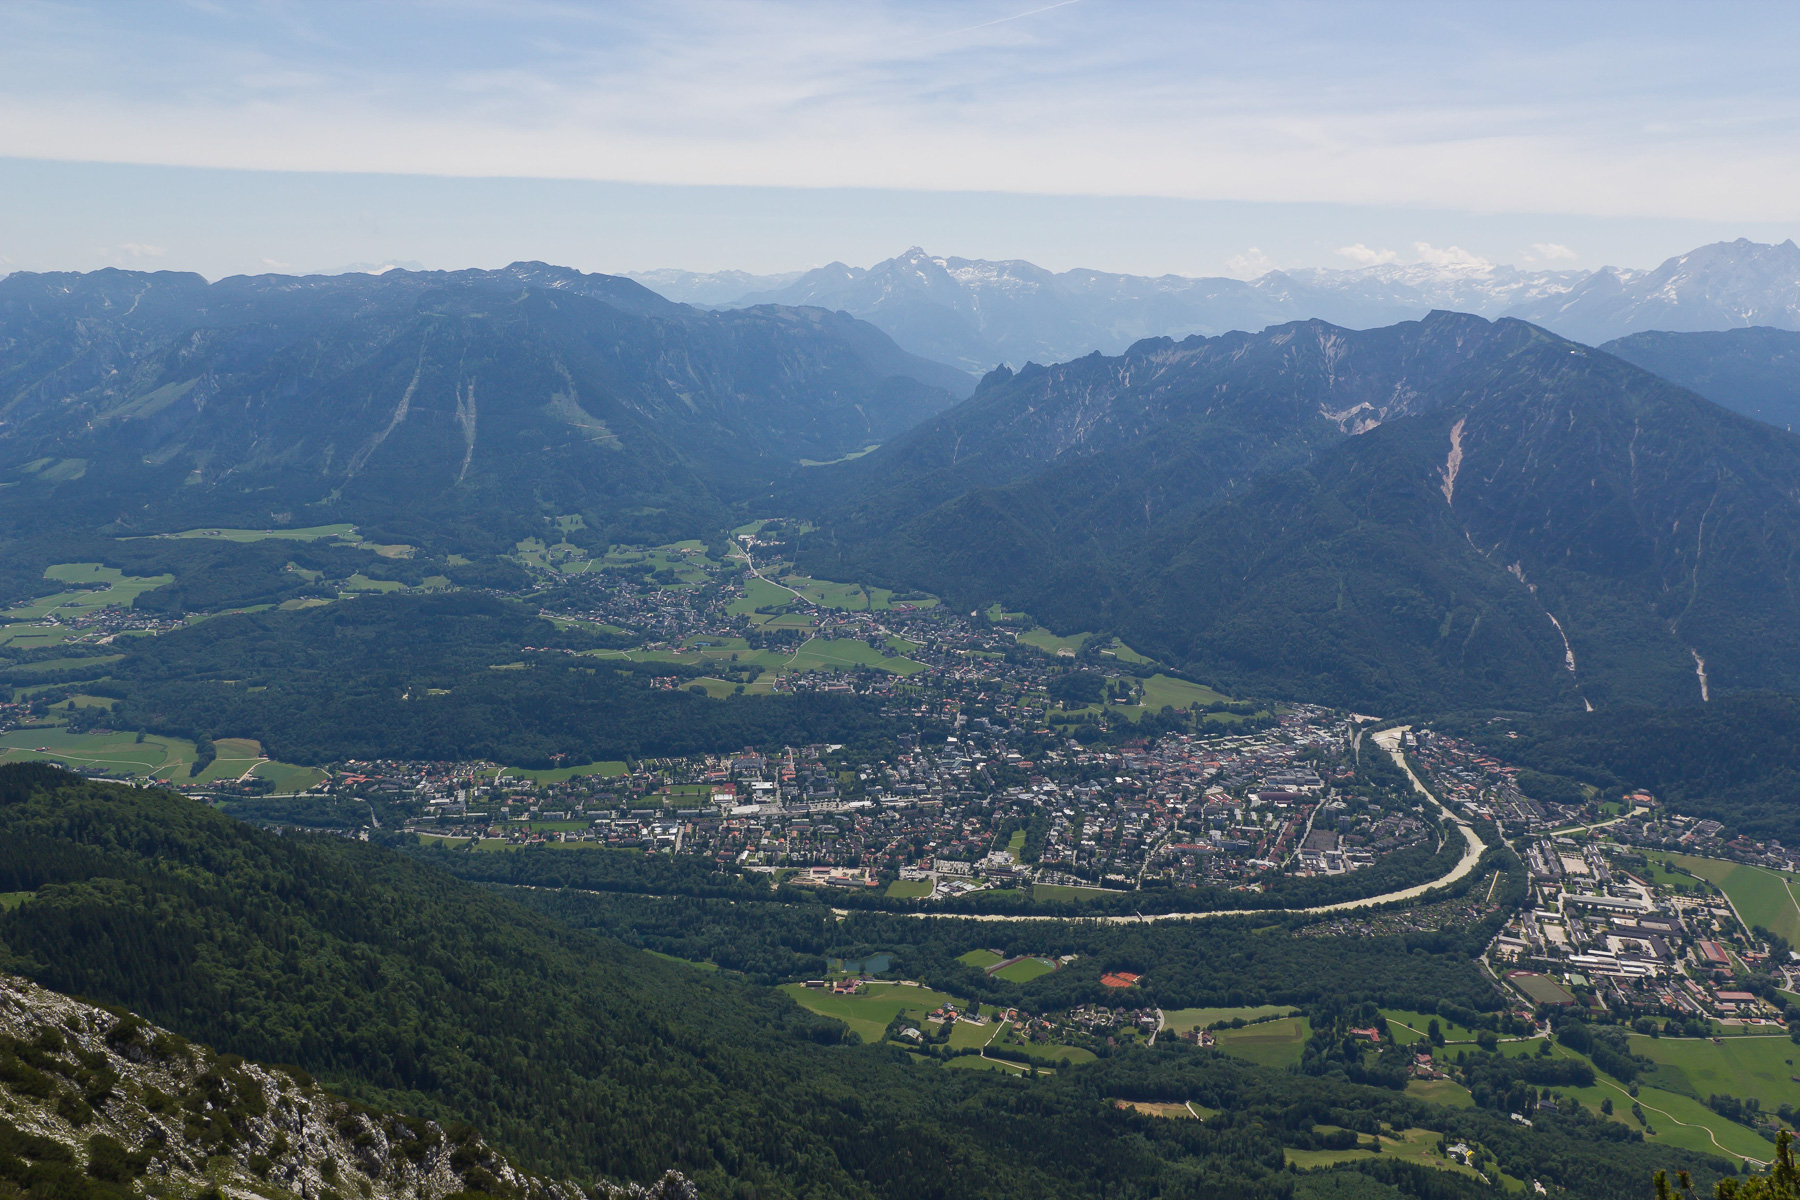 Tiefblick vom Gipfel mit Untersberg und Lattengebirge.